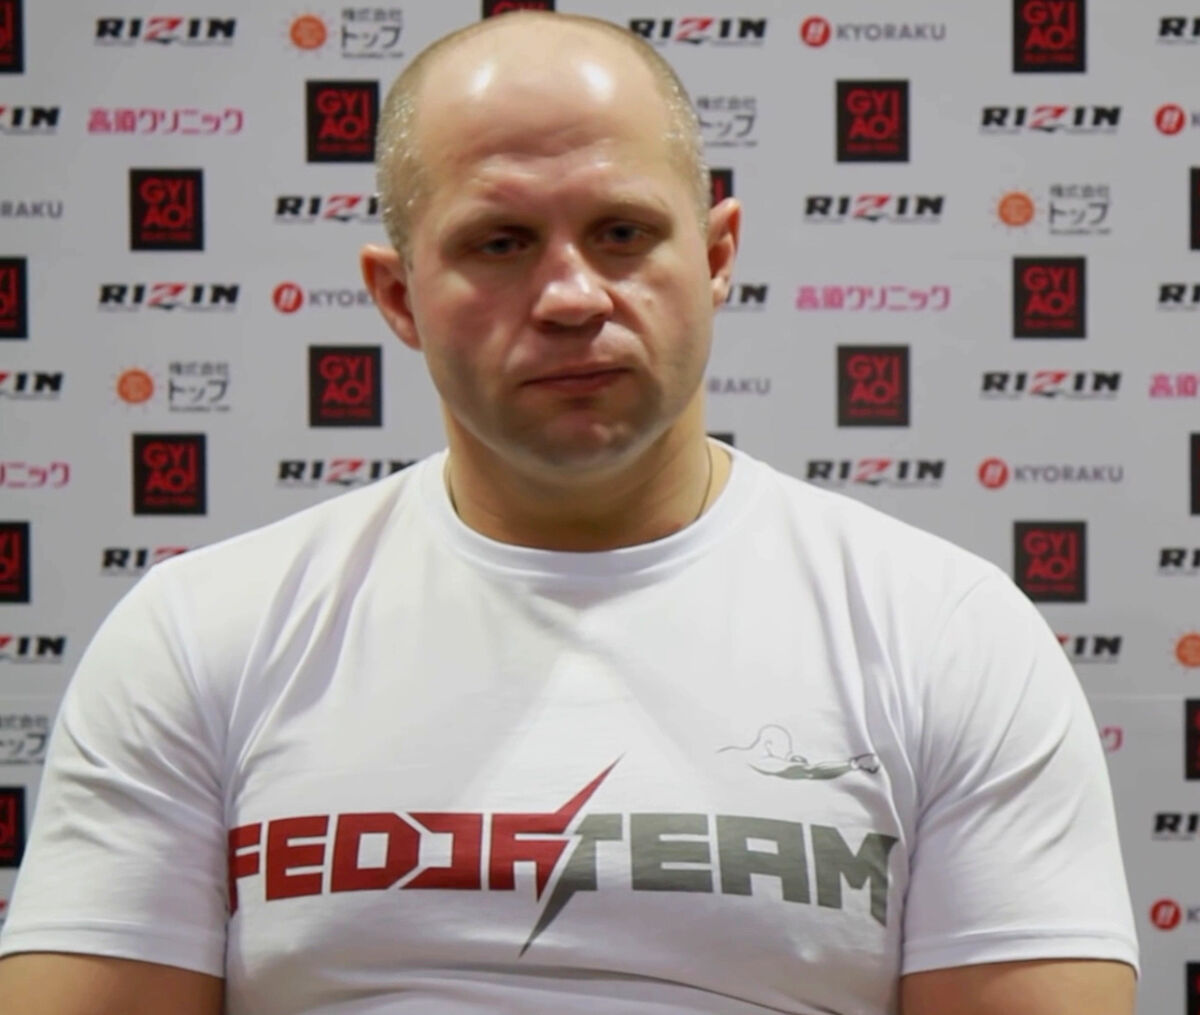 Fedor Emelianenko net worth in MMA category